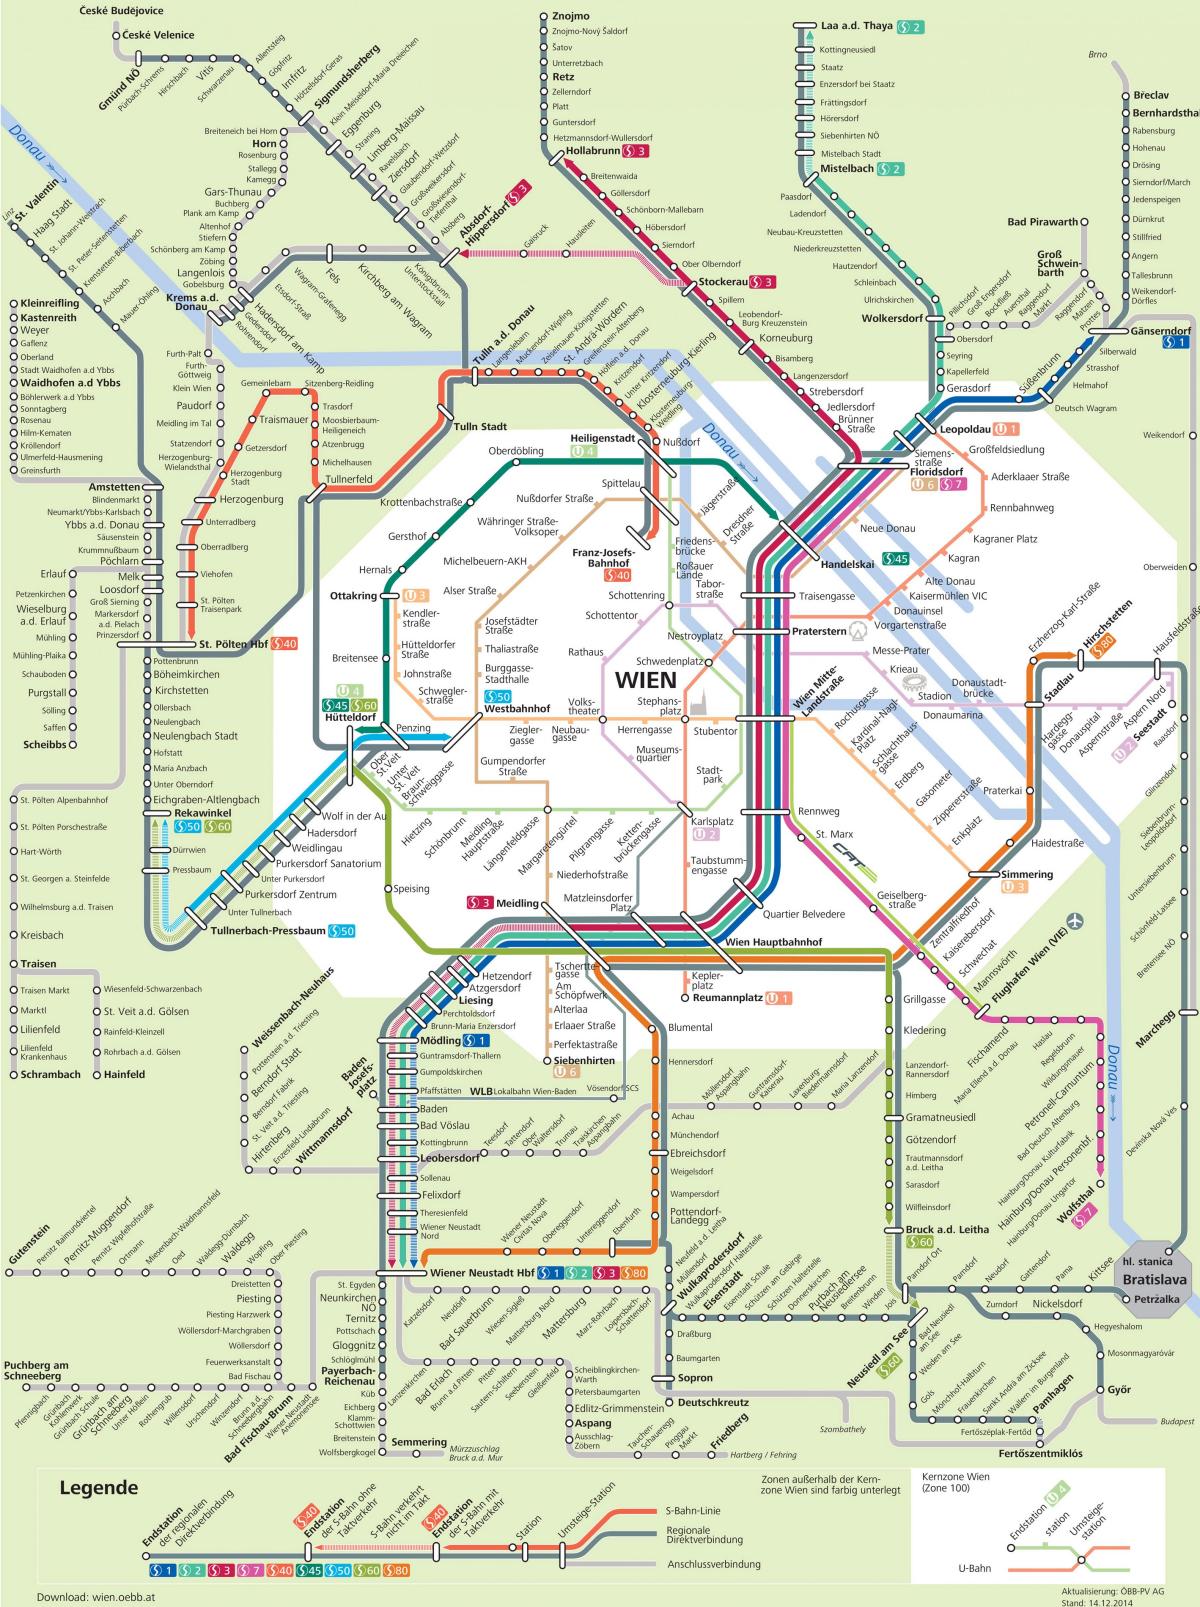 Kaart van Wenen s7 route